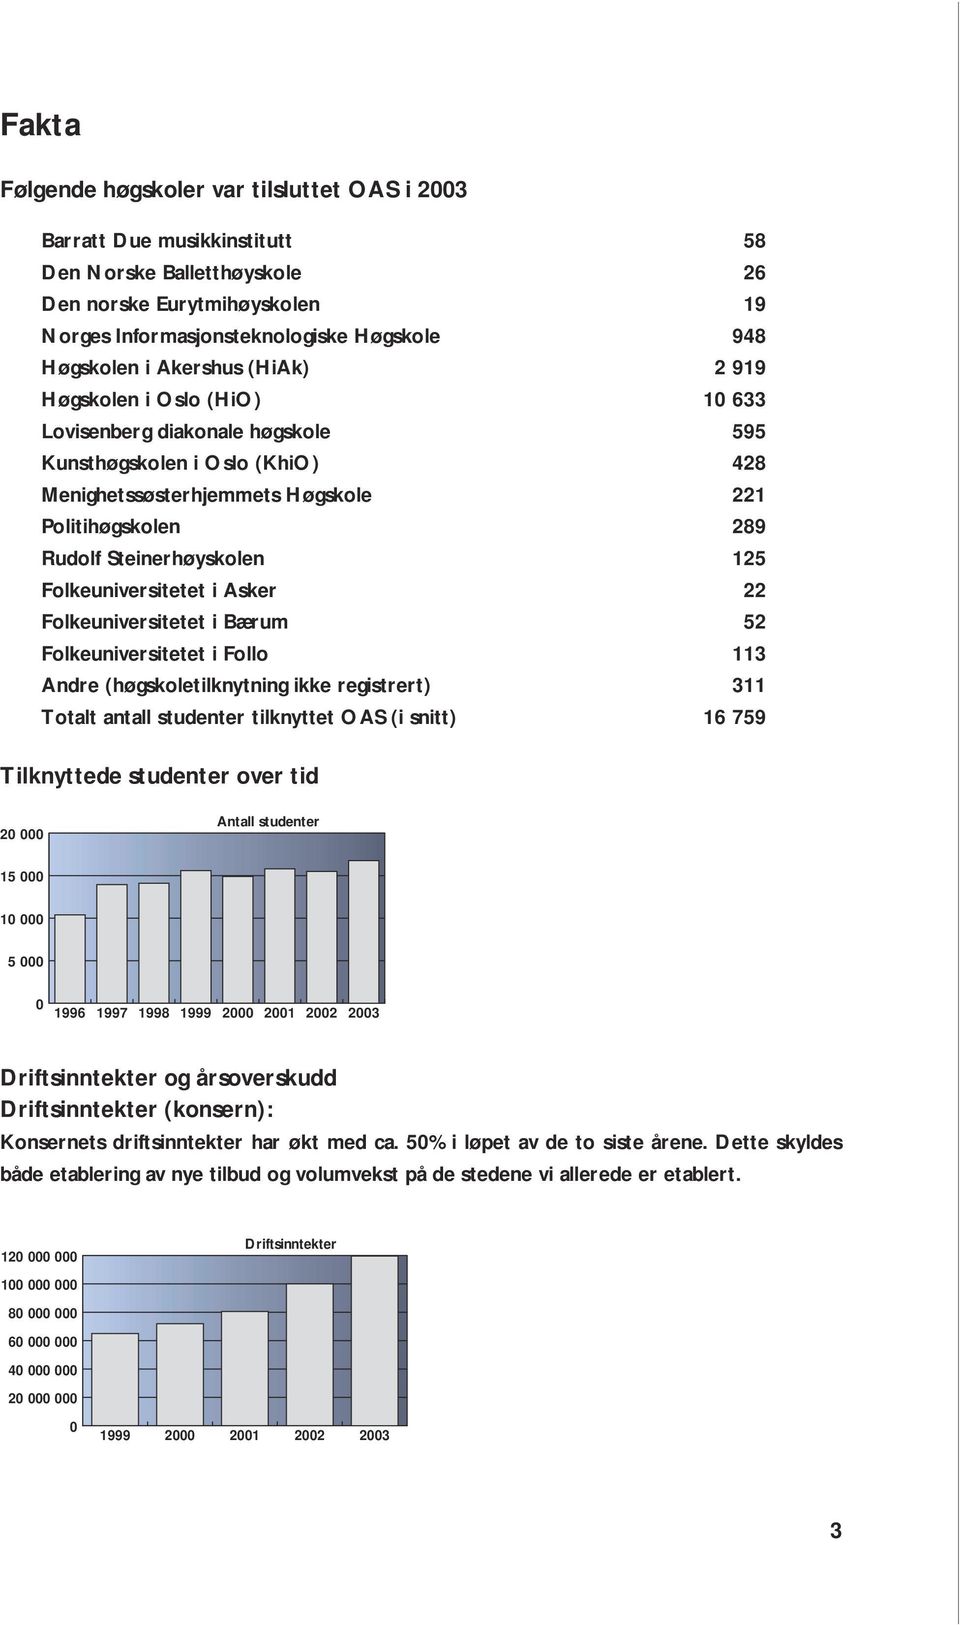 Folkeuniversitetet i Bærum Folkeuniversitetet i Follo Andre (høgskoletilknytning ikke registrert) Totalt antall studenter tilknyttet OAS (i snitt) 58 26 19 948 2 919 10 633 595 428 221 289 125 22 52